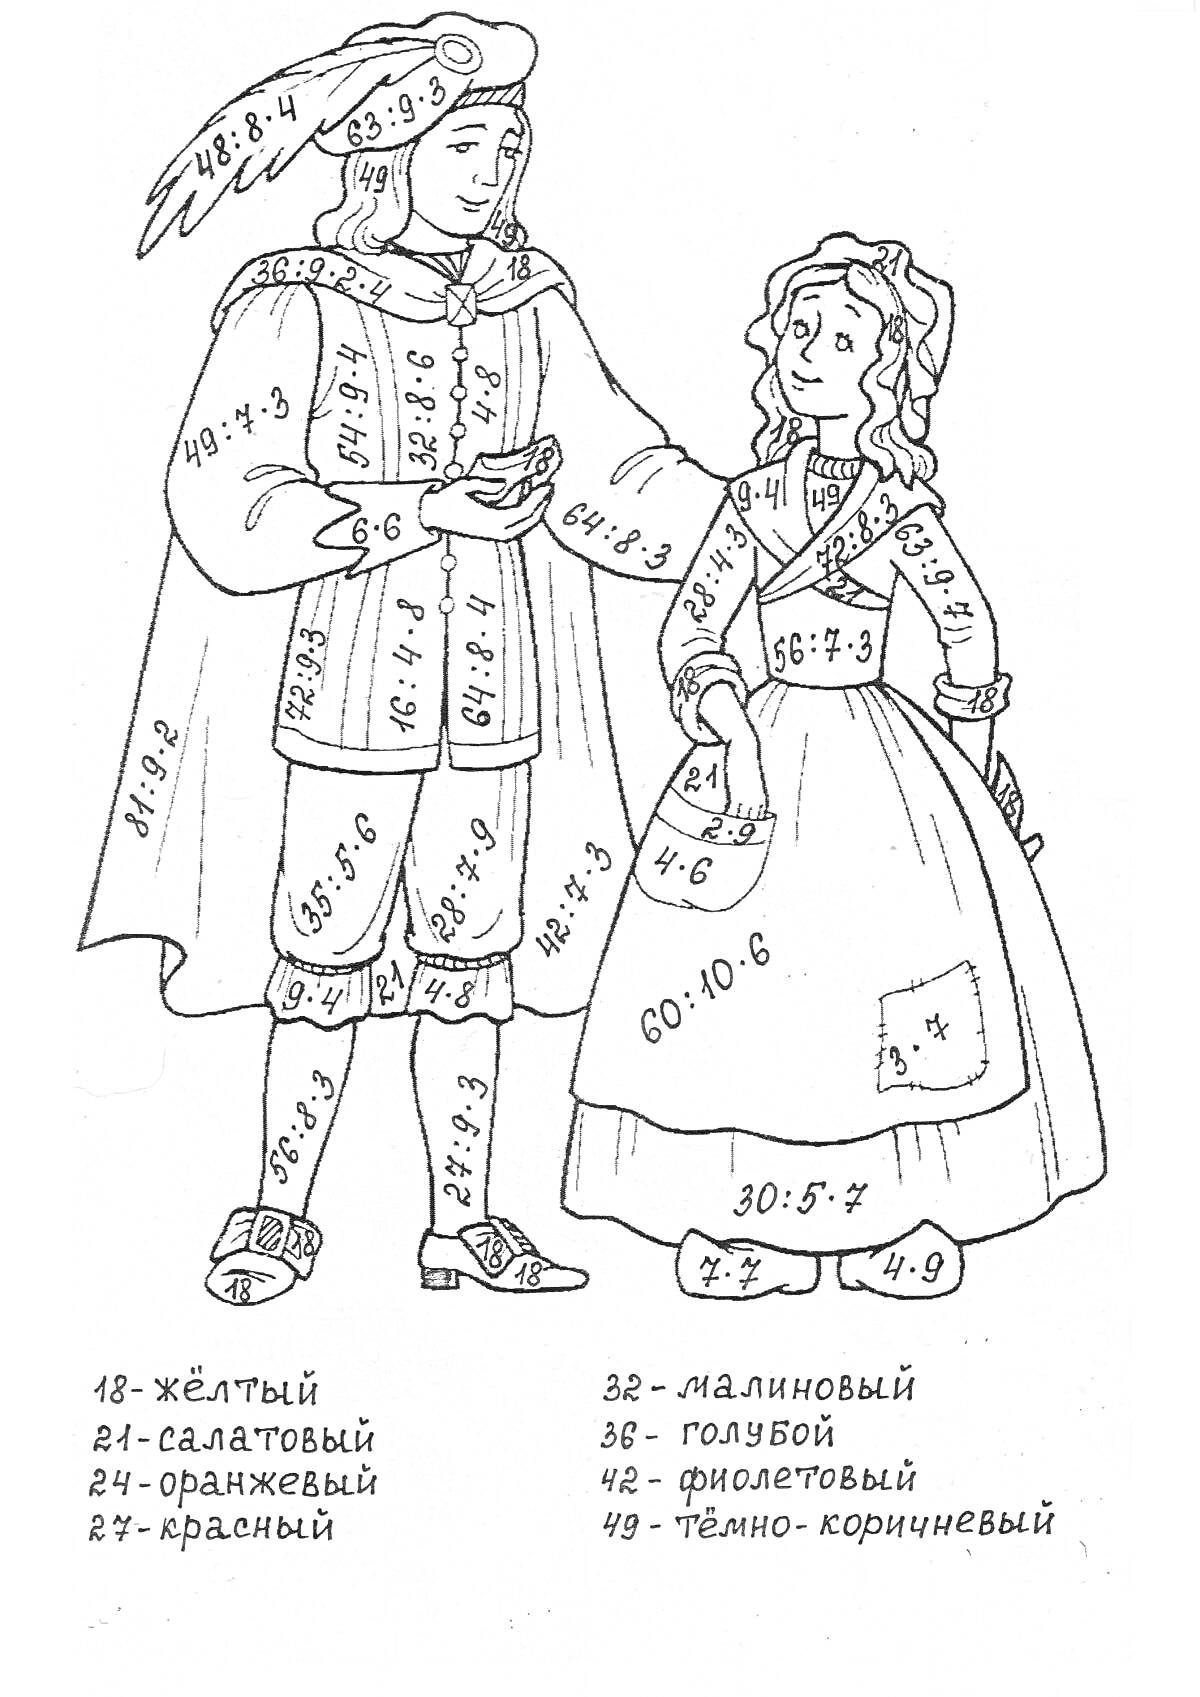 Мужчина и женщина в исторических костюмах, цветная по математическим примерам